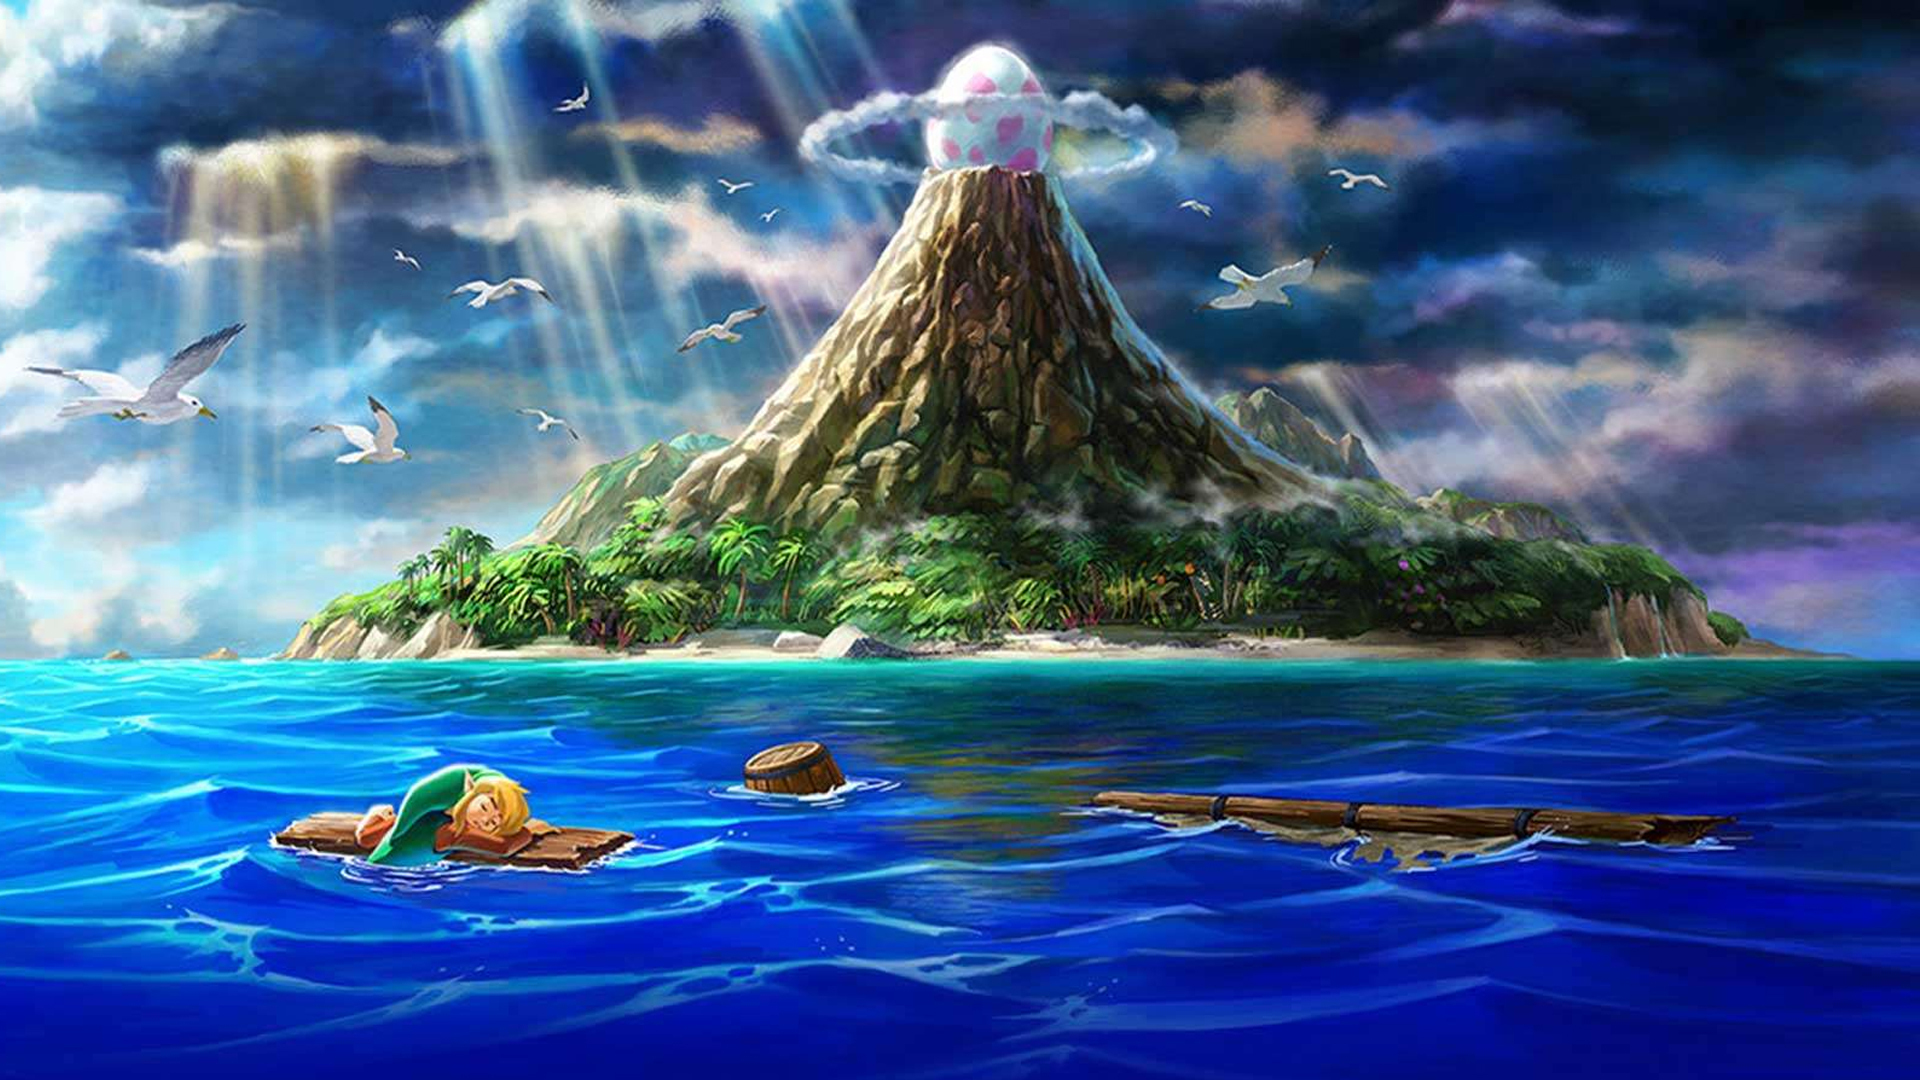 The Legend of Zelda: Link's Awakening - Announcement Trailer - Nintendo  Switch 